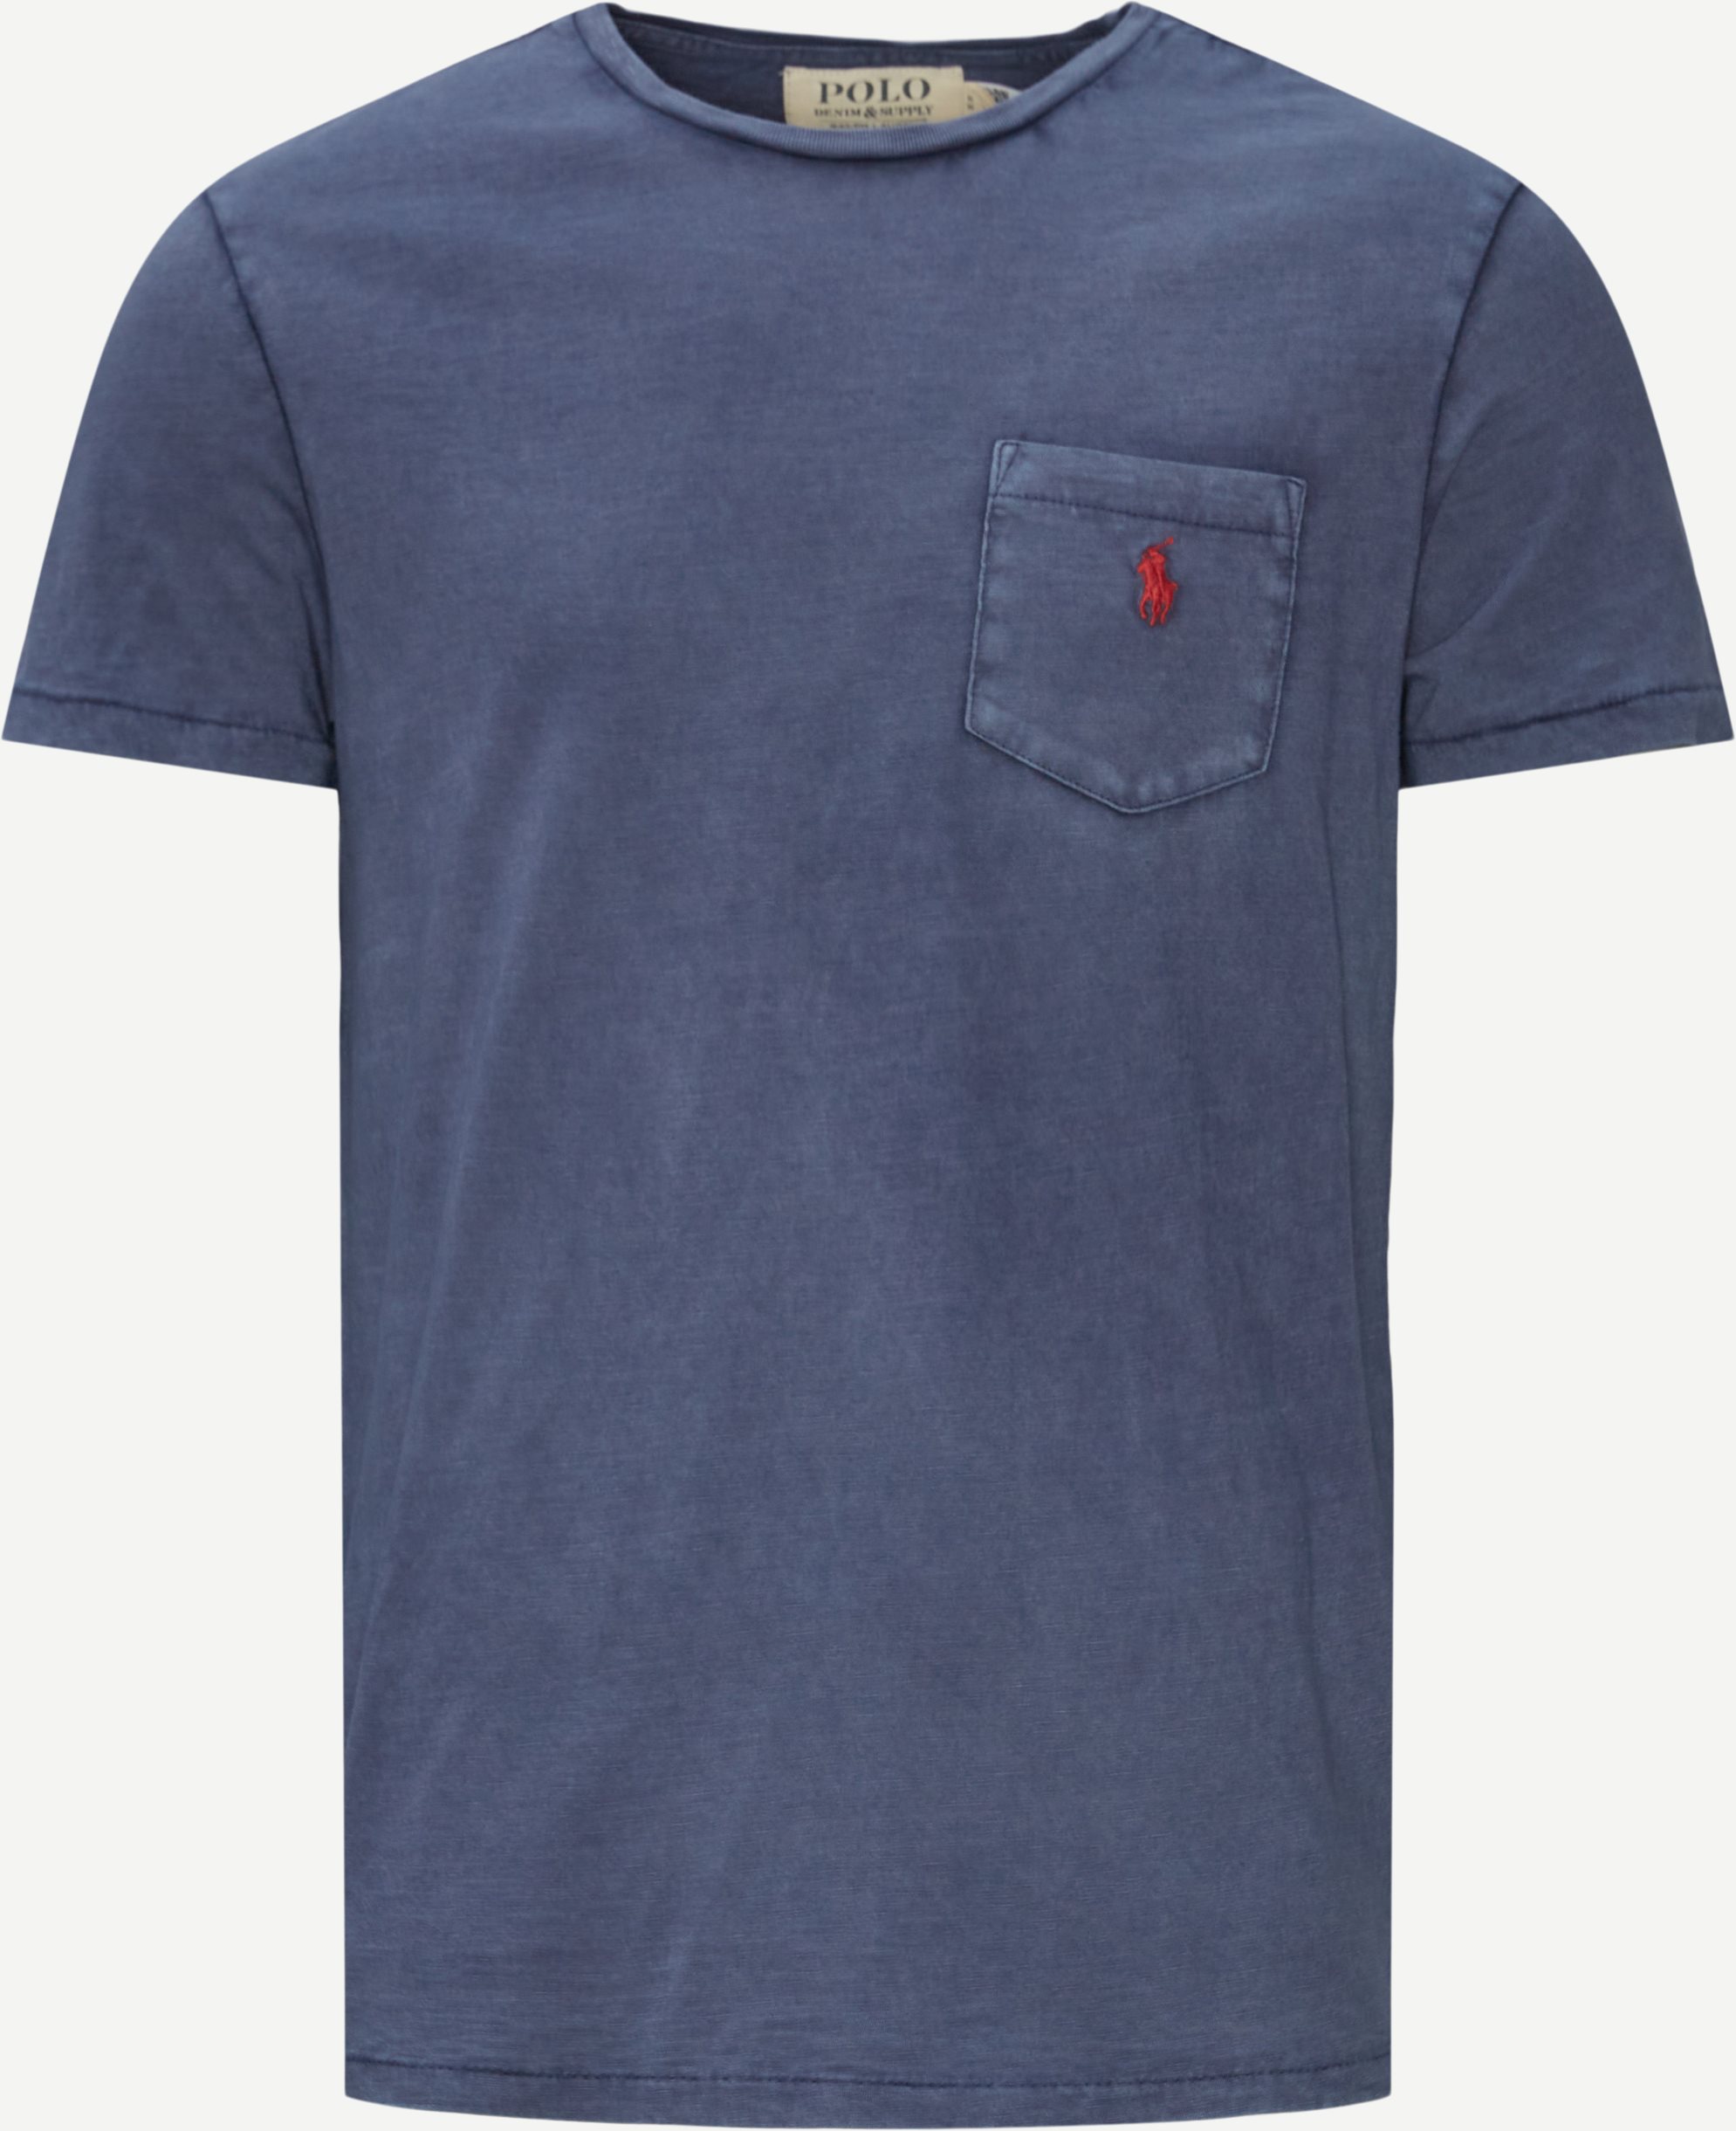 Polo Ralph Lauren T-shirts 710795137 Blue